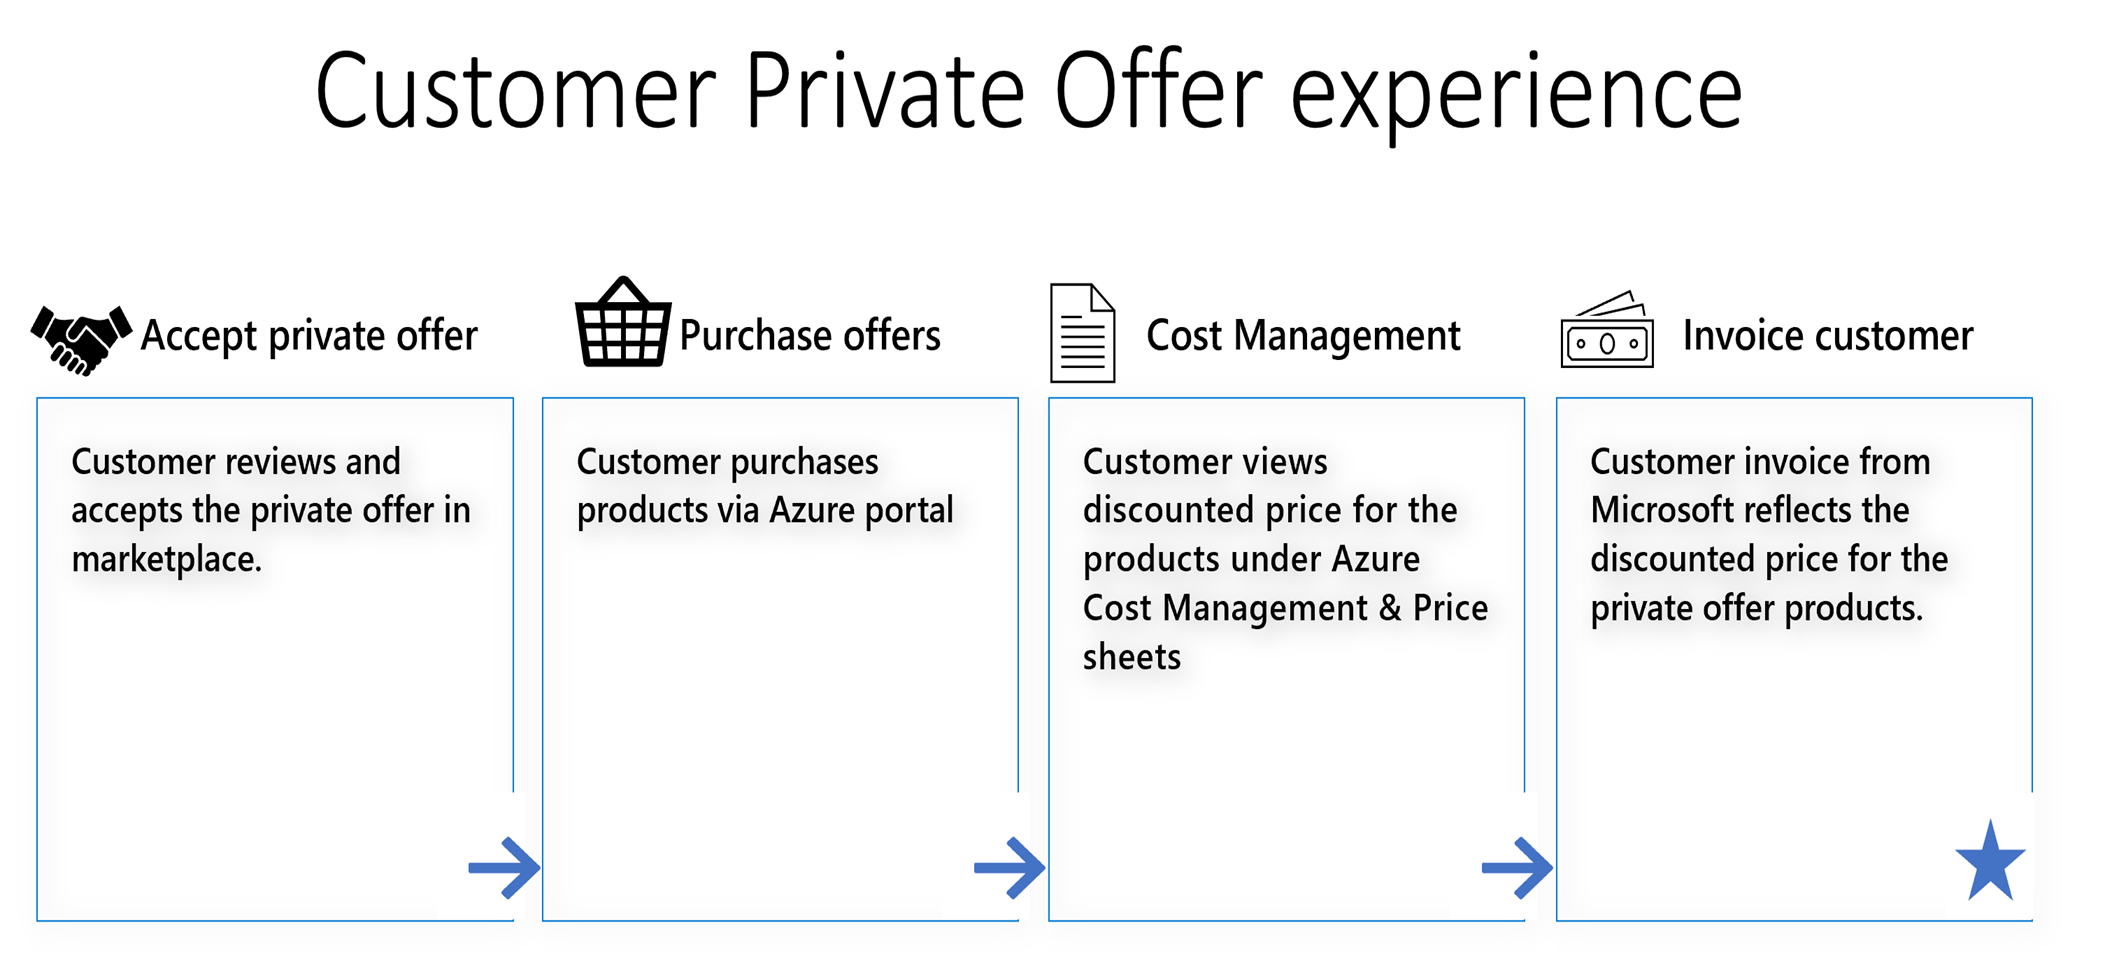 Mostra a progressão da experiência de oferta privada do cliente com ISVs.